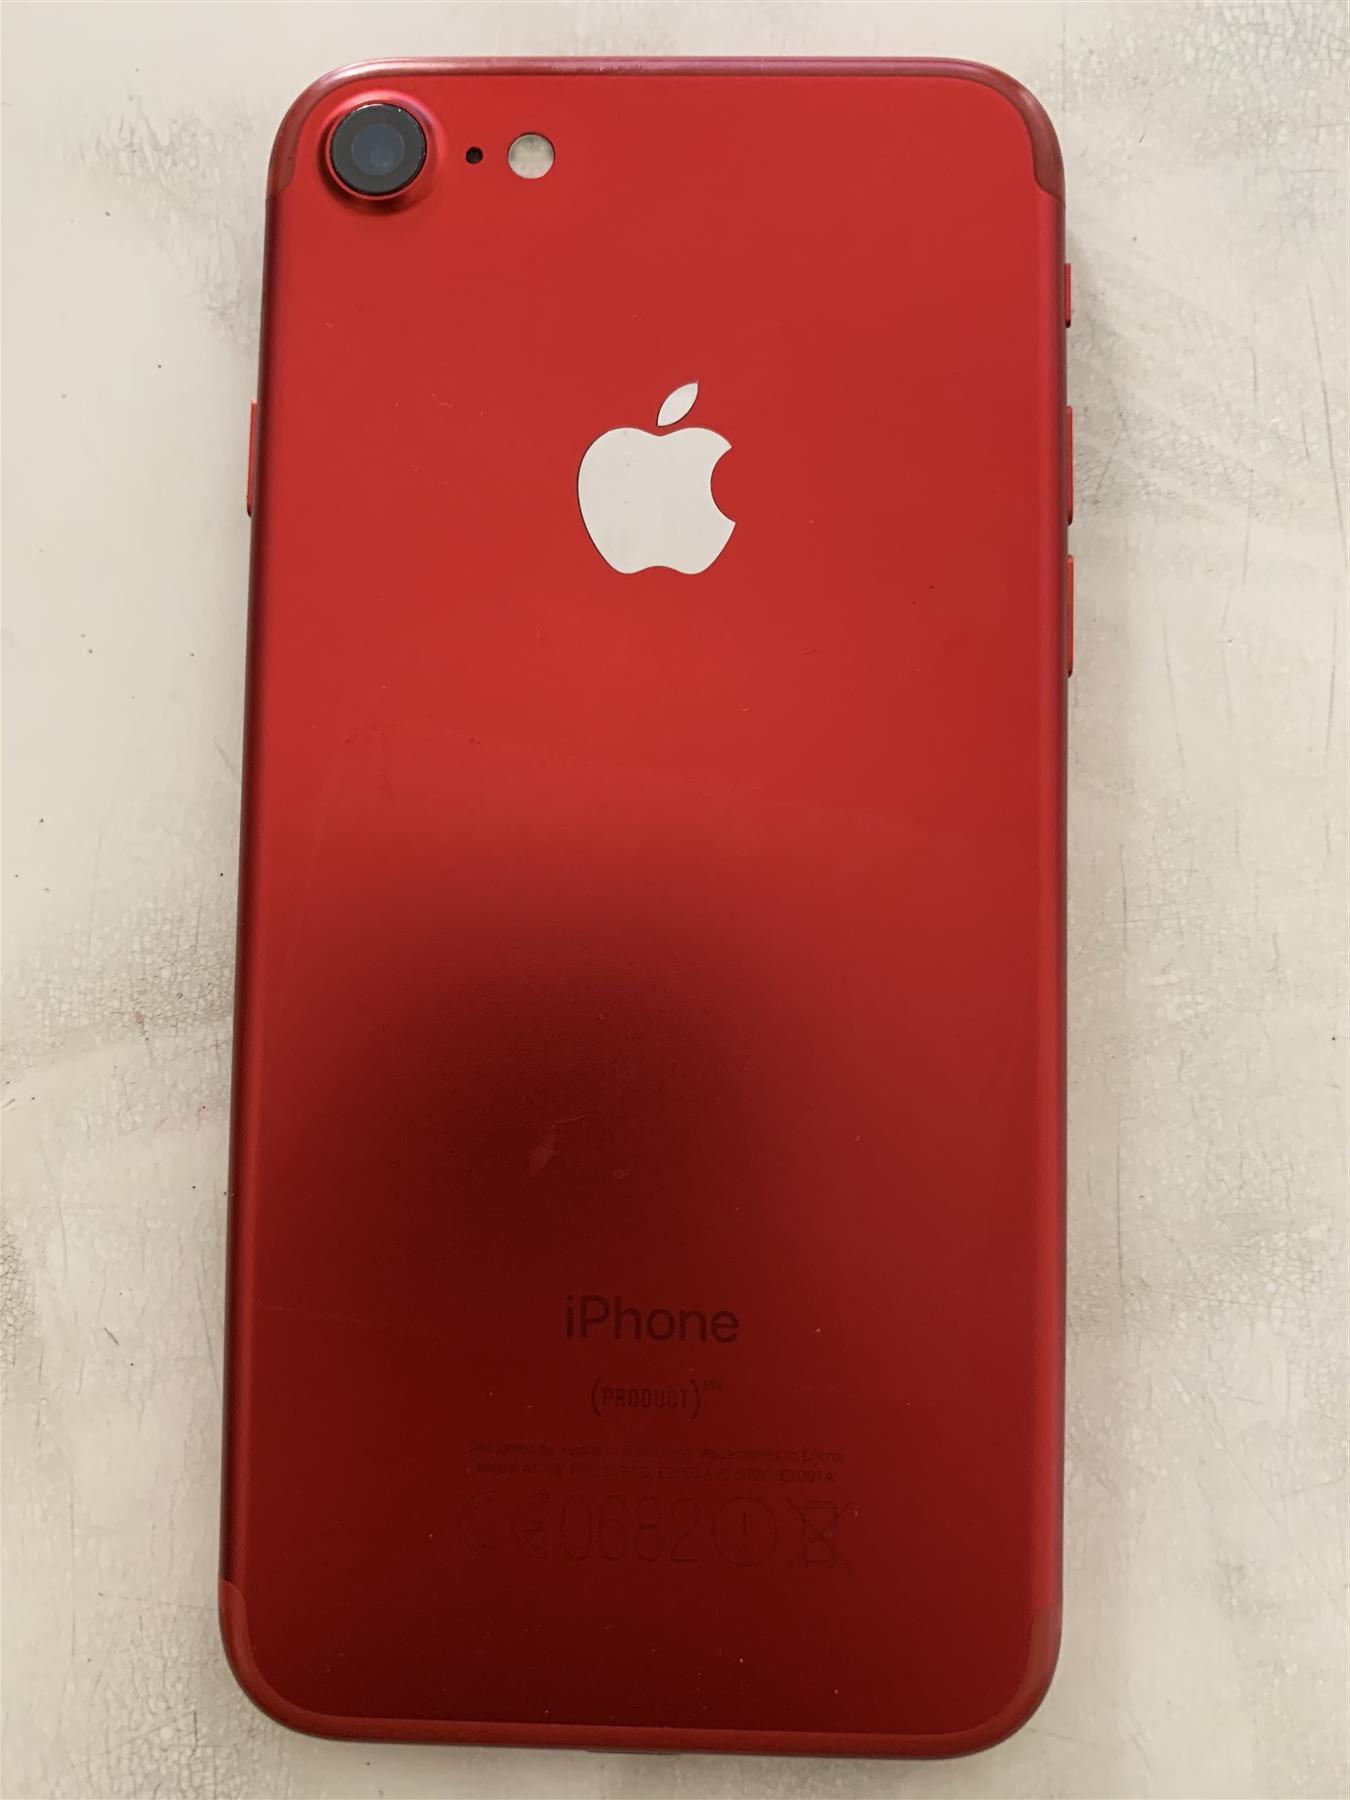 Apple iPhone 7 32GB Unlocked, Red - Used